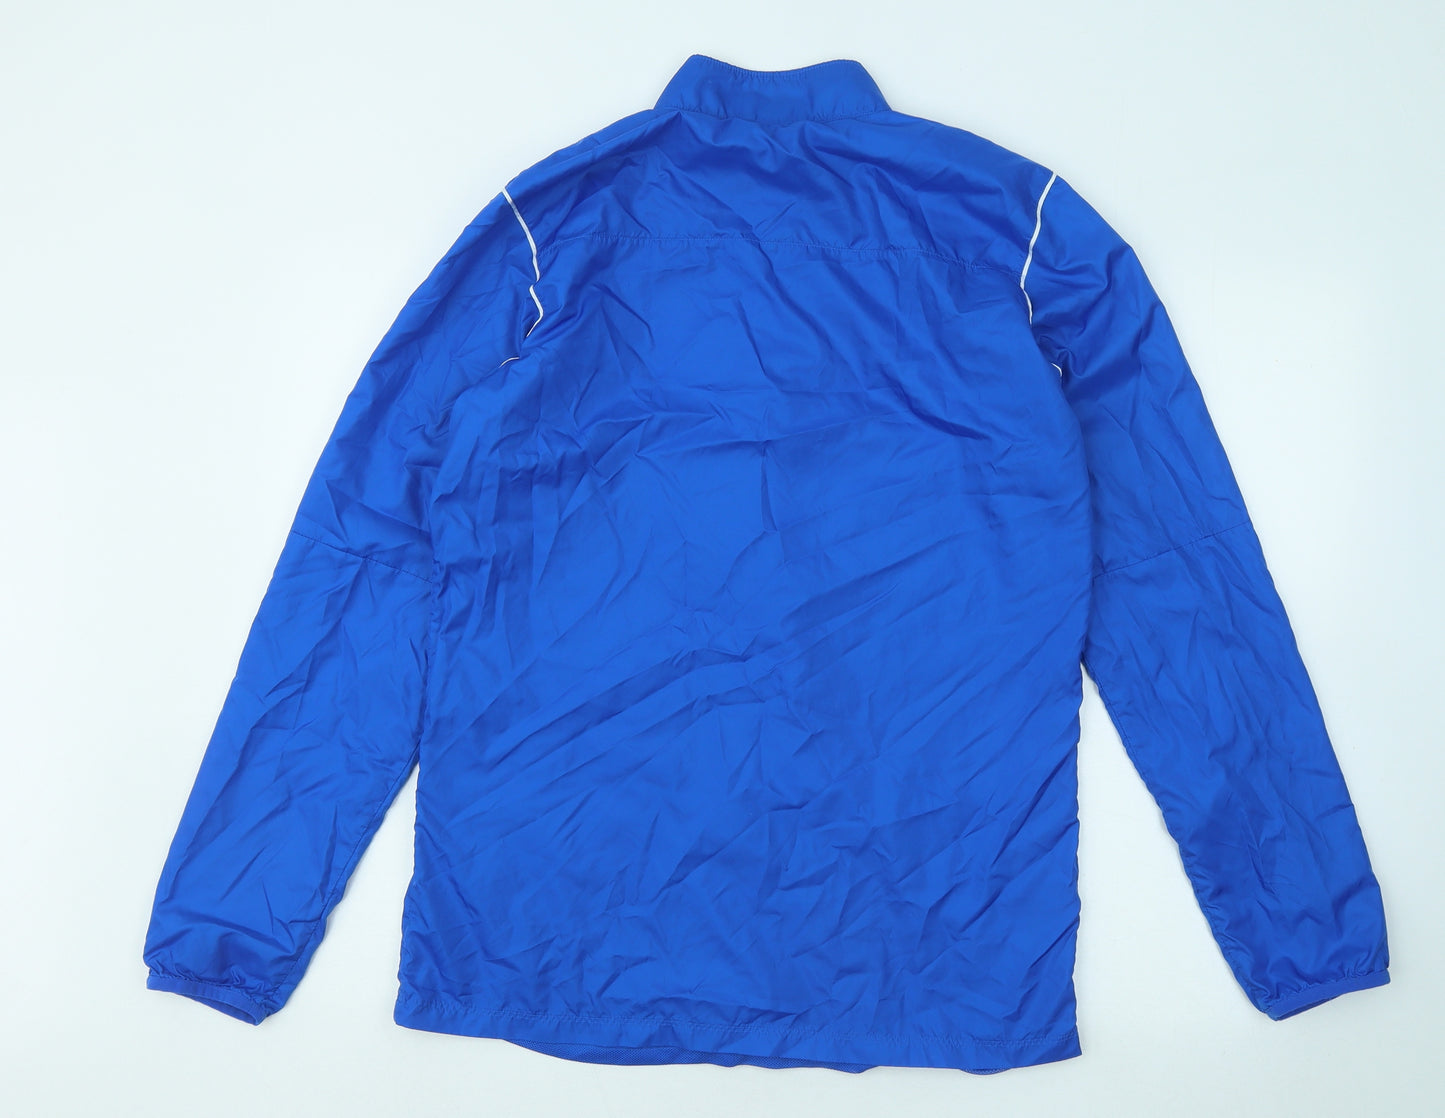 Nike Mens Blue Jacket Size M Zip - Berlin Swifts FC